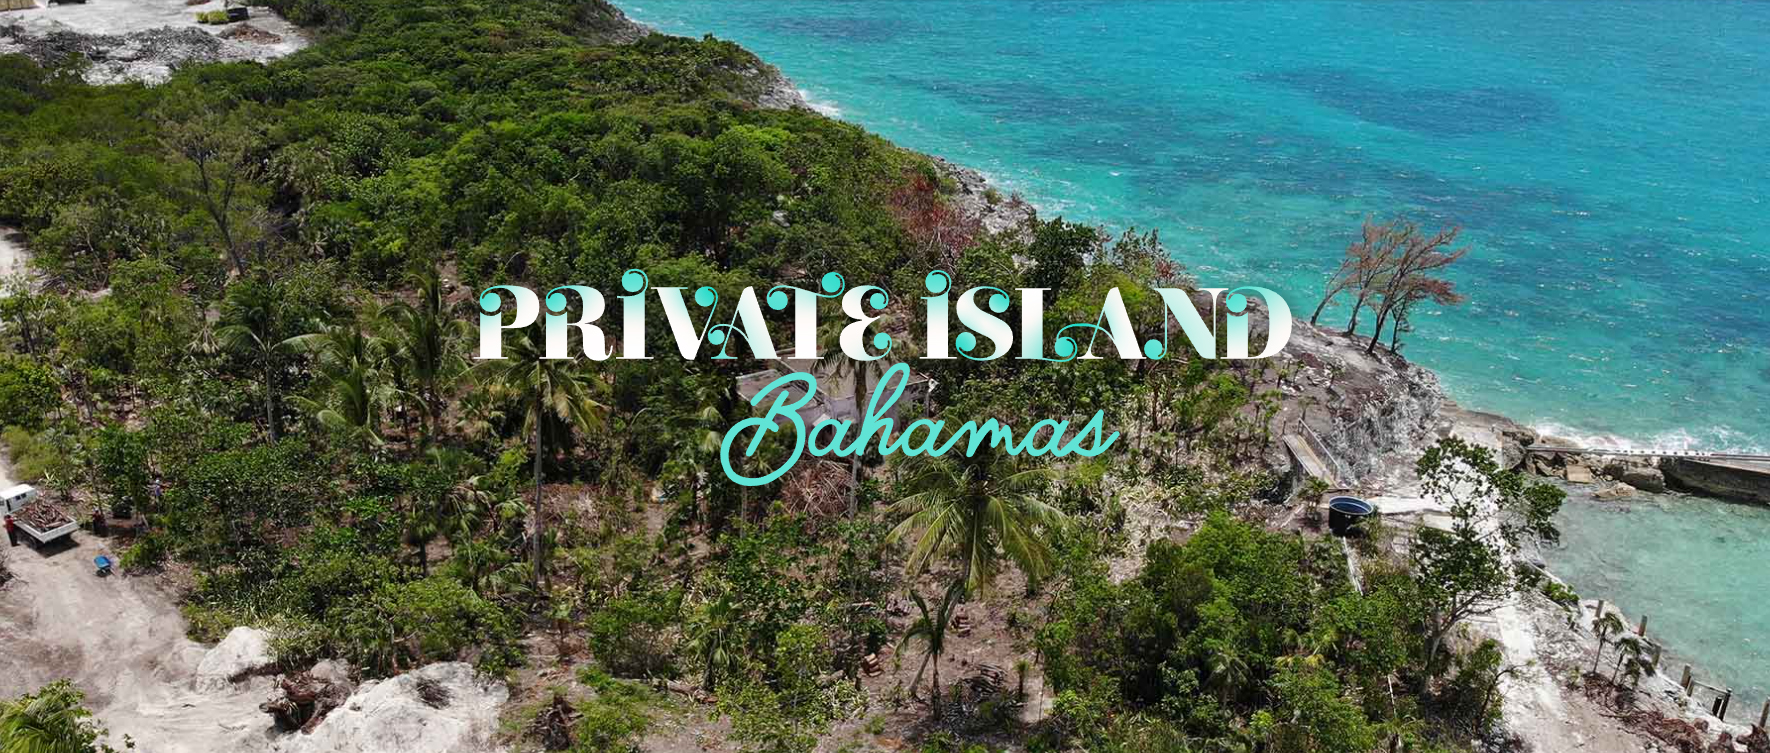 巴哈马私人岛屿开发概念设计竞赛